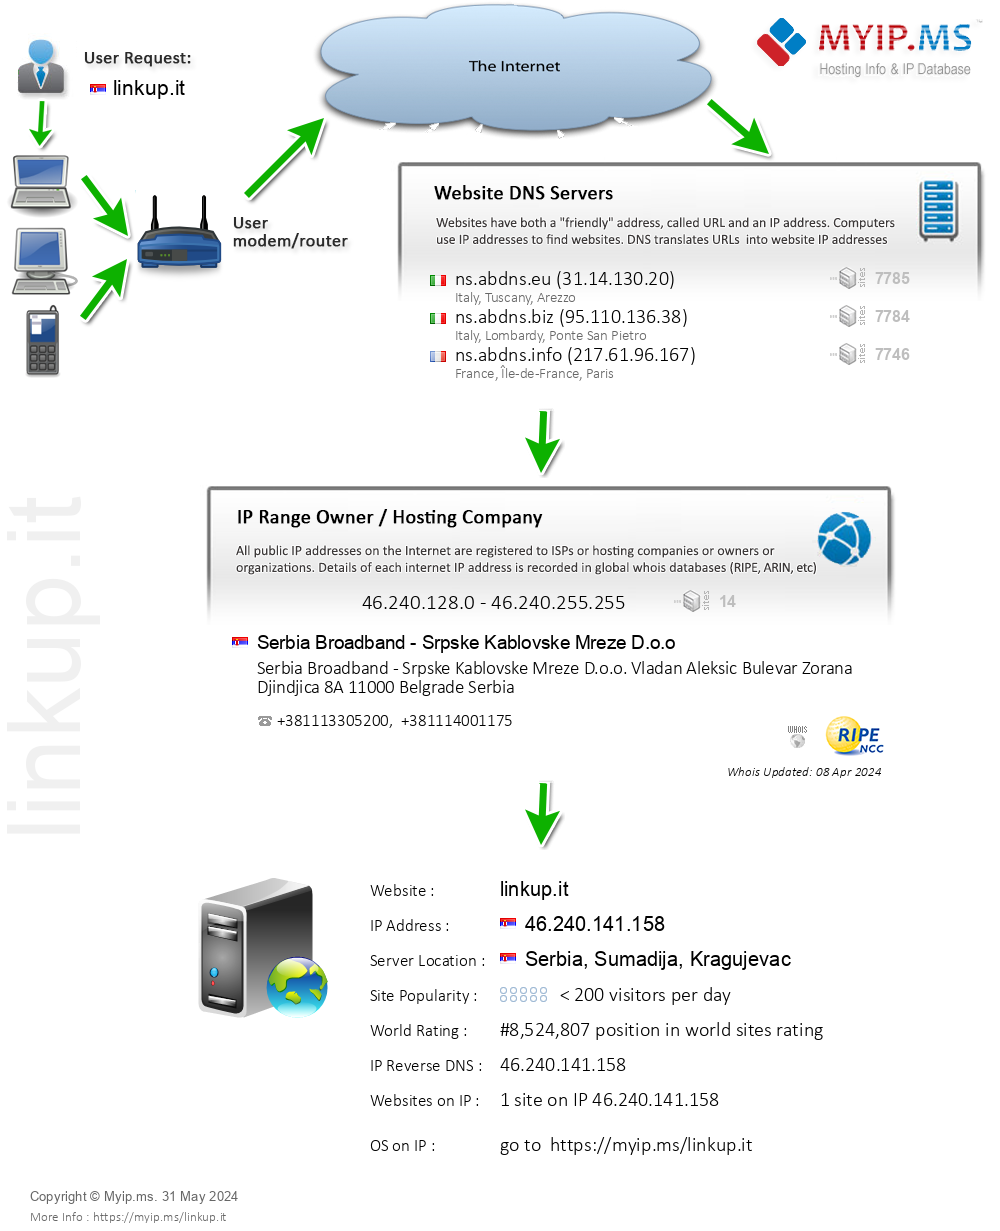 Linkup.it - Website Hosting Visual IP Diagram